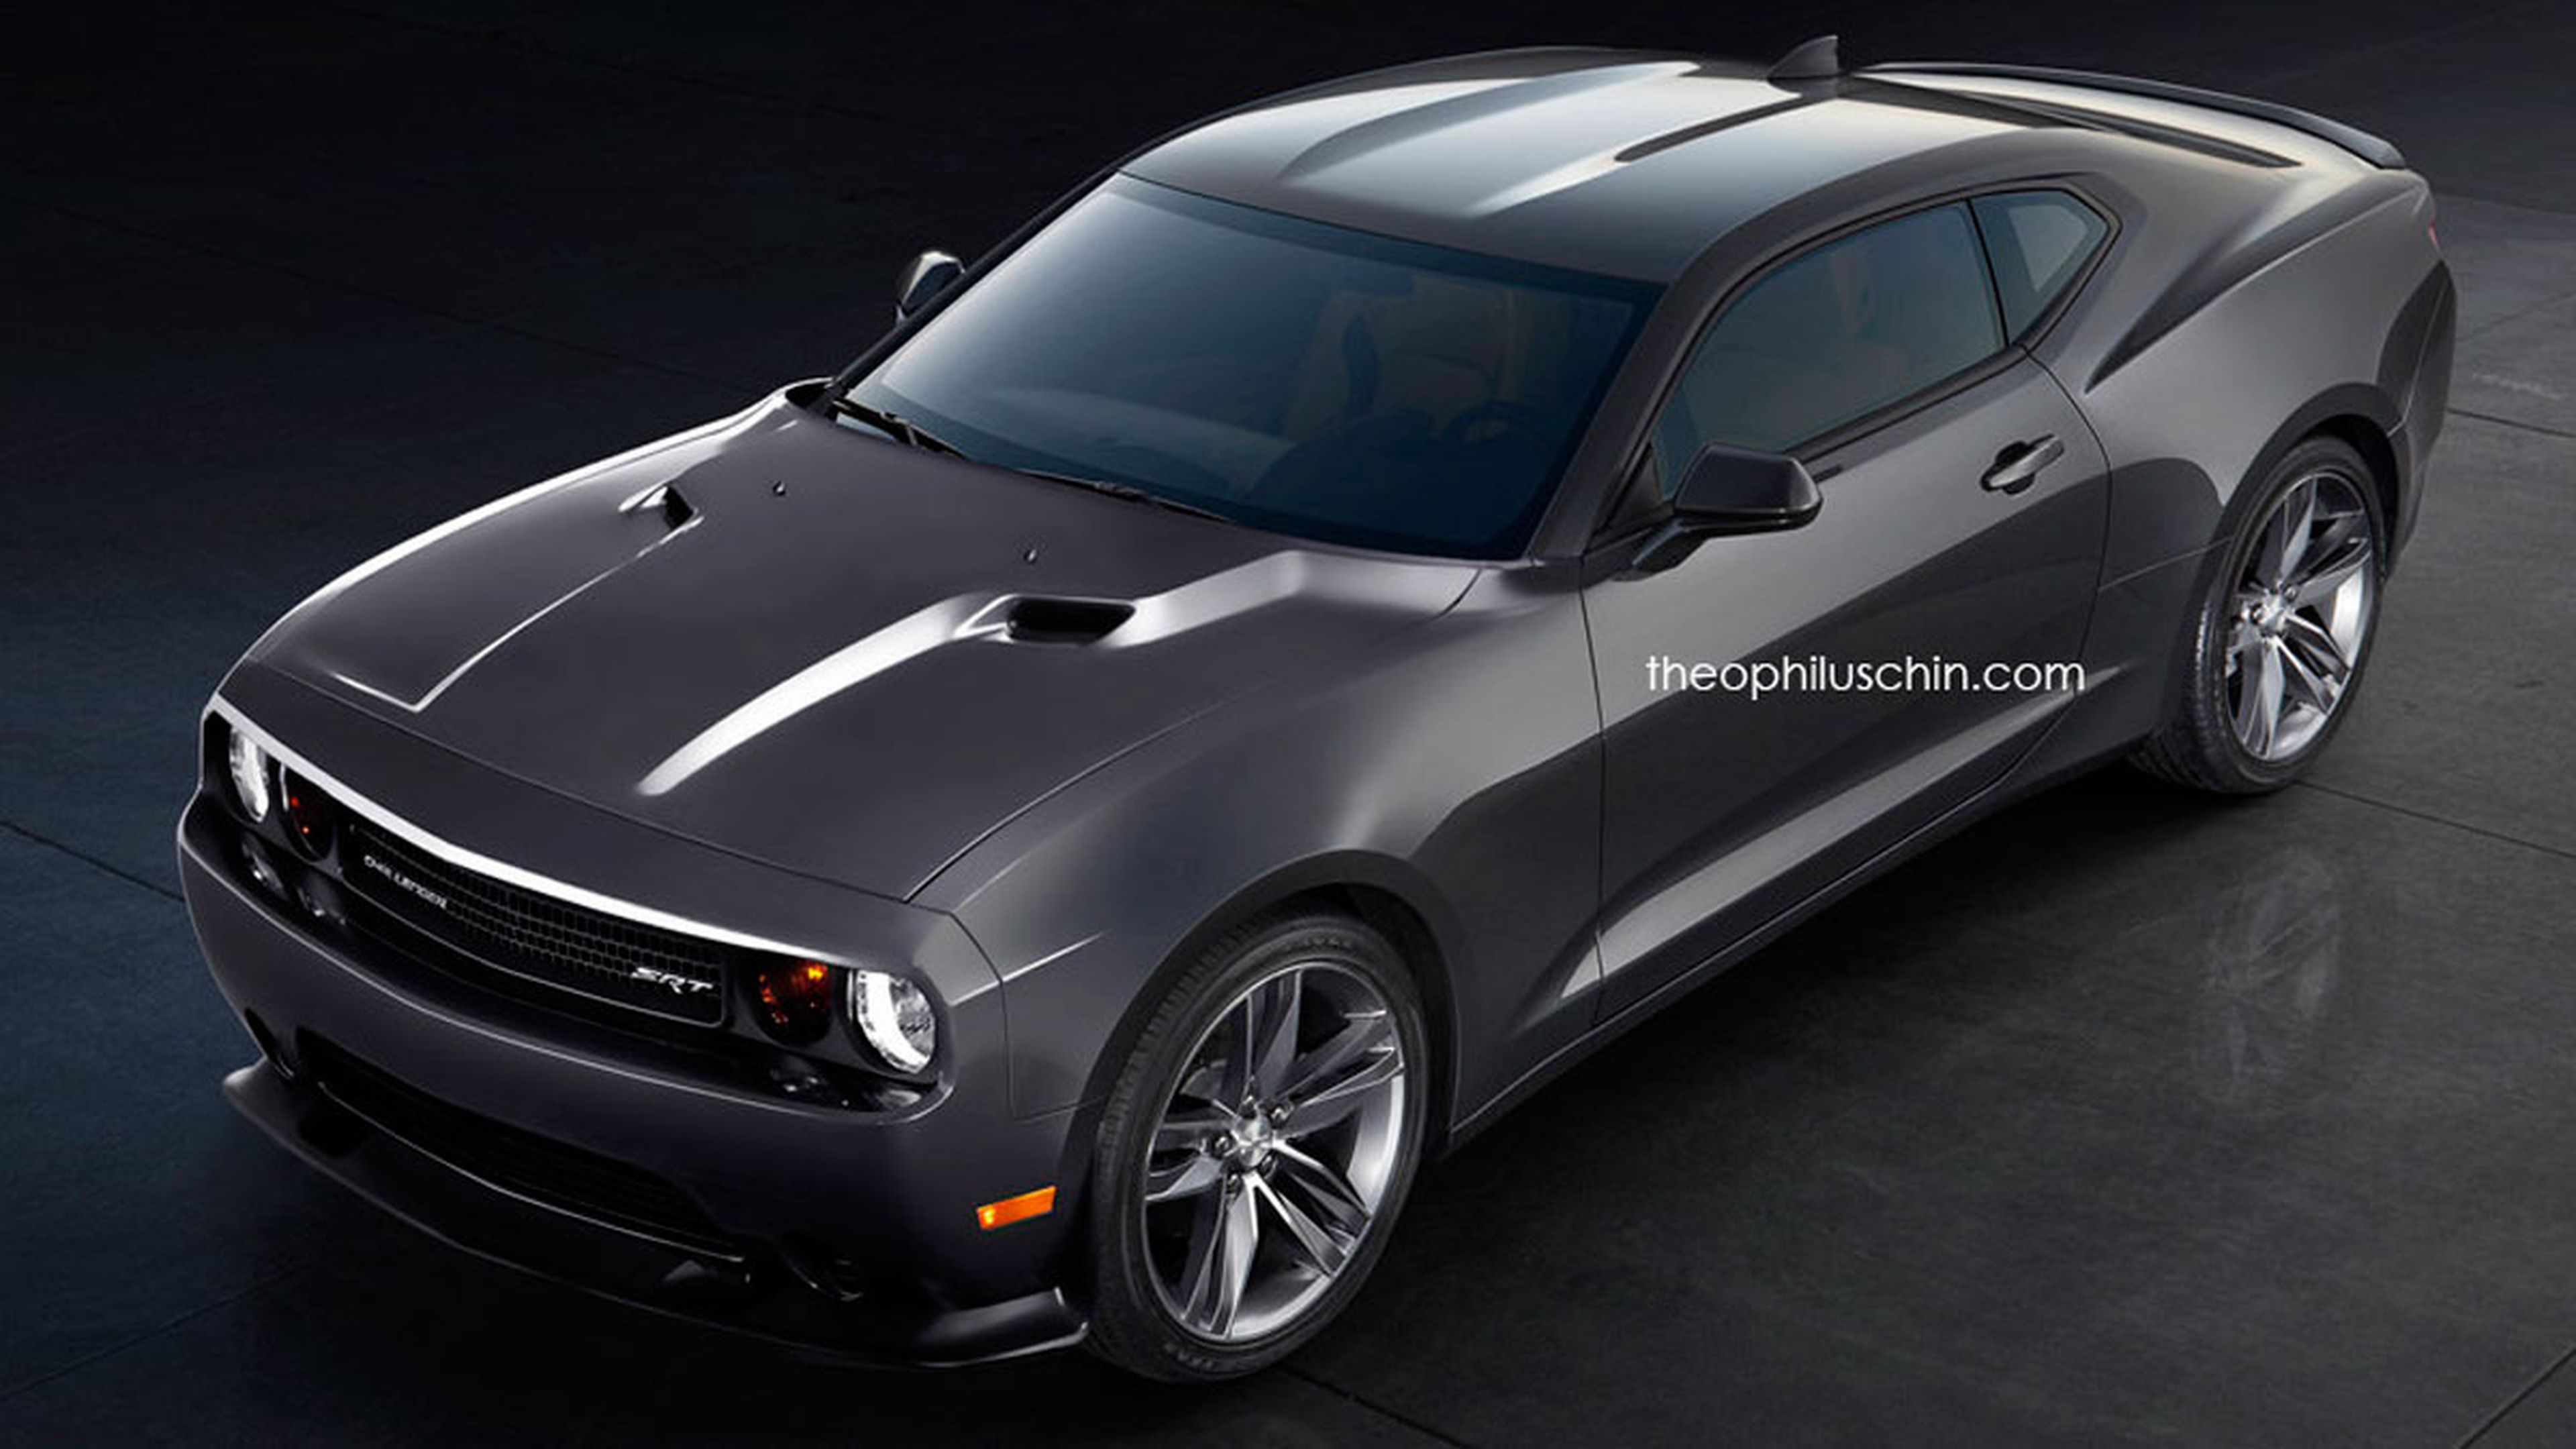 Challenger+Mustang+Camaro: el muscle car perfecto